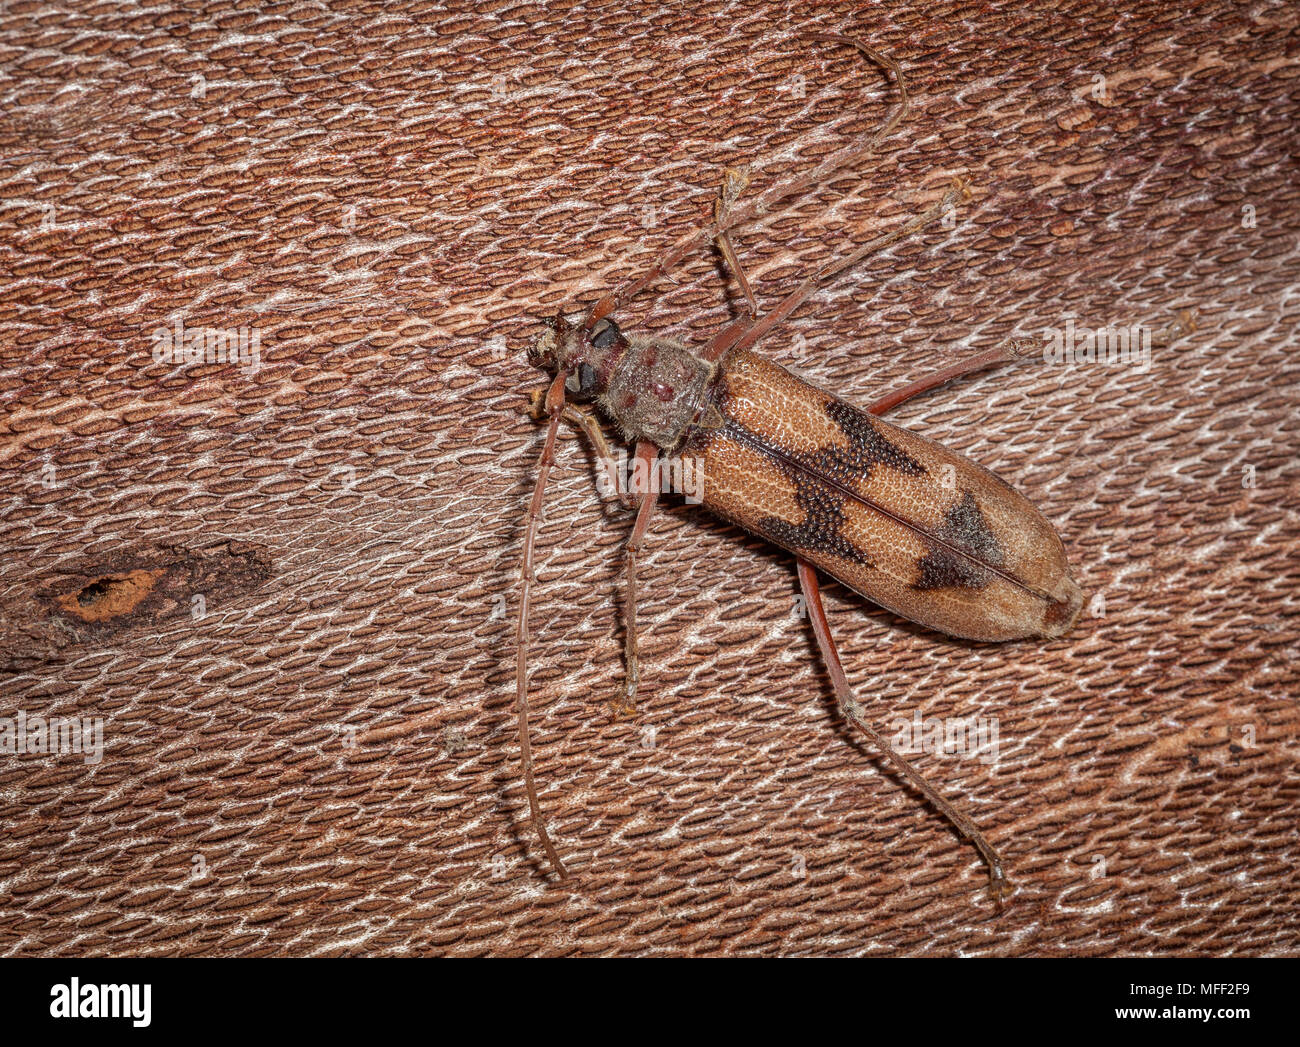 Bullseye Borer (Phoracantha acanthocera). Fam. Cerambycidae (Longicorn Beetles), Subfam. Cerambycinae, Larvae bore into Eucalypts and are considered a Stock Photo